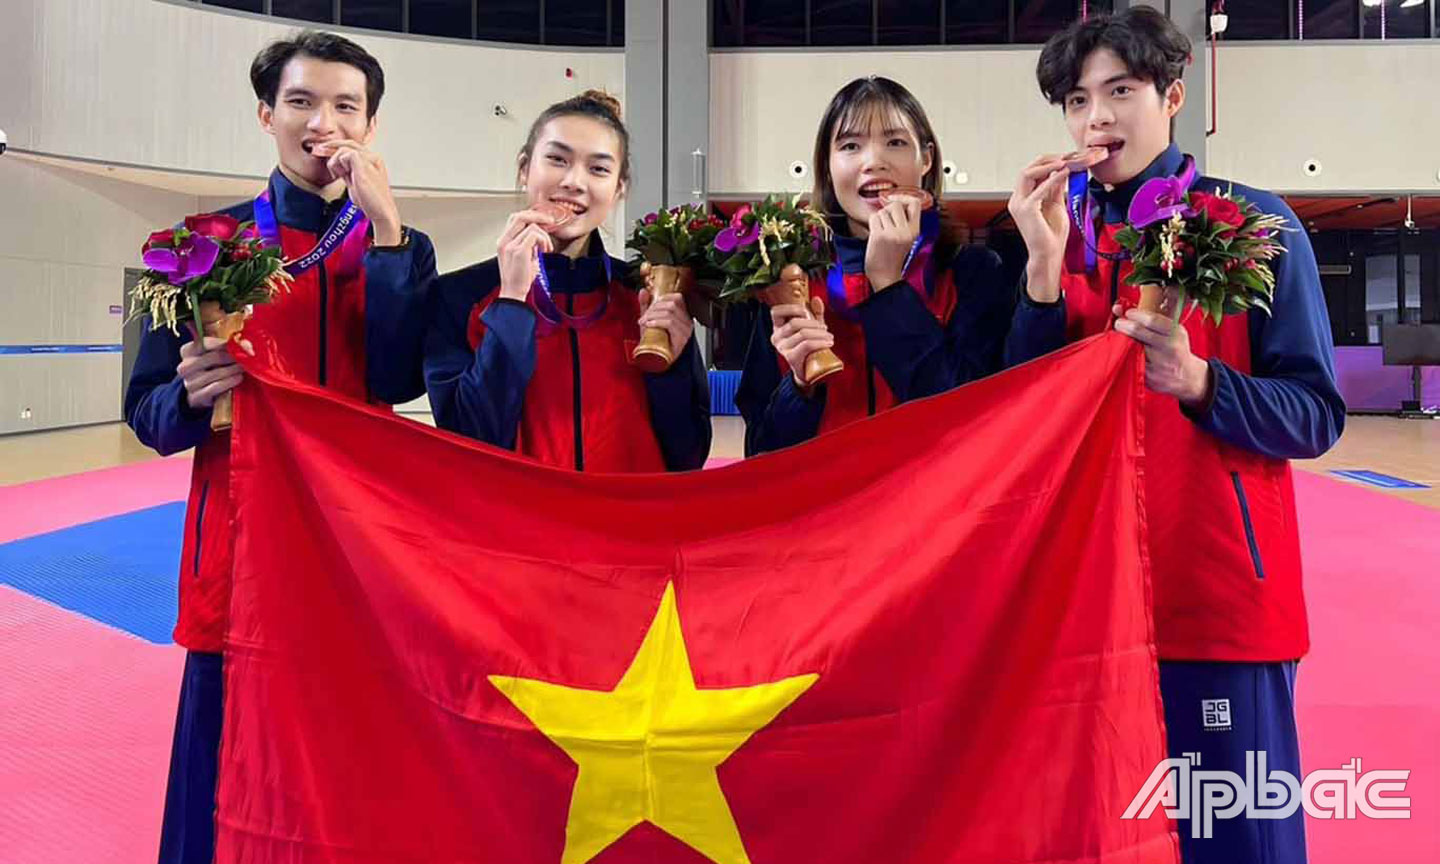 VĐV Phạm Minh Bảo Kha (bìa phải) cùng với các đồng đội đoạt HCĐ ở nội dung đồng đội bộ môn Taekwondo tại ASIAD 19.